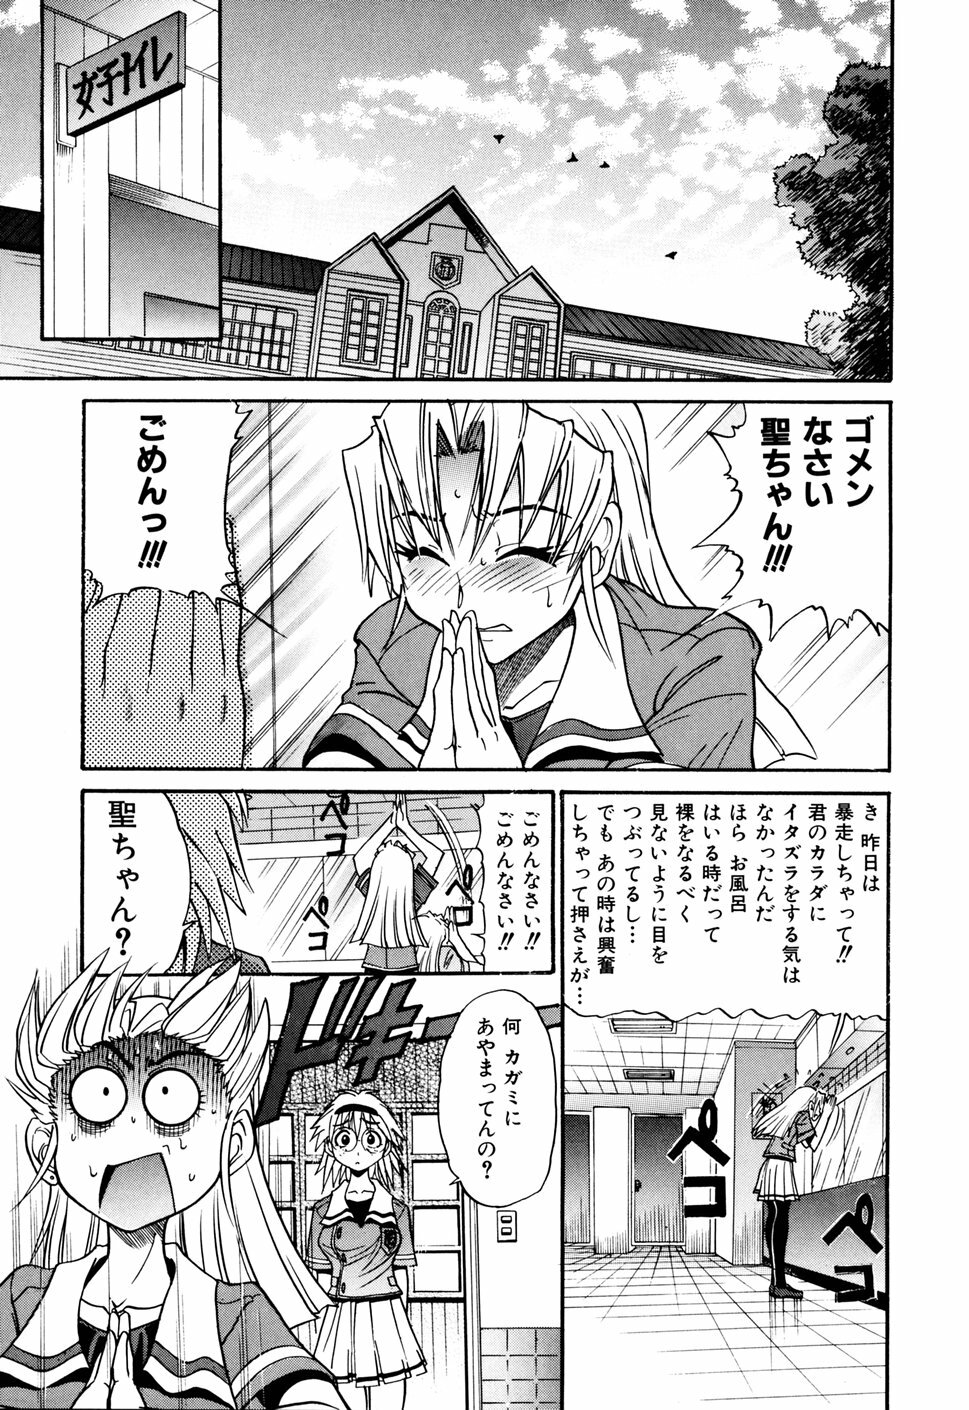 [DISTANCE] Ochiru Tenshi Vol. 1 page 39 full